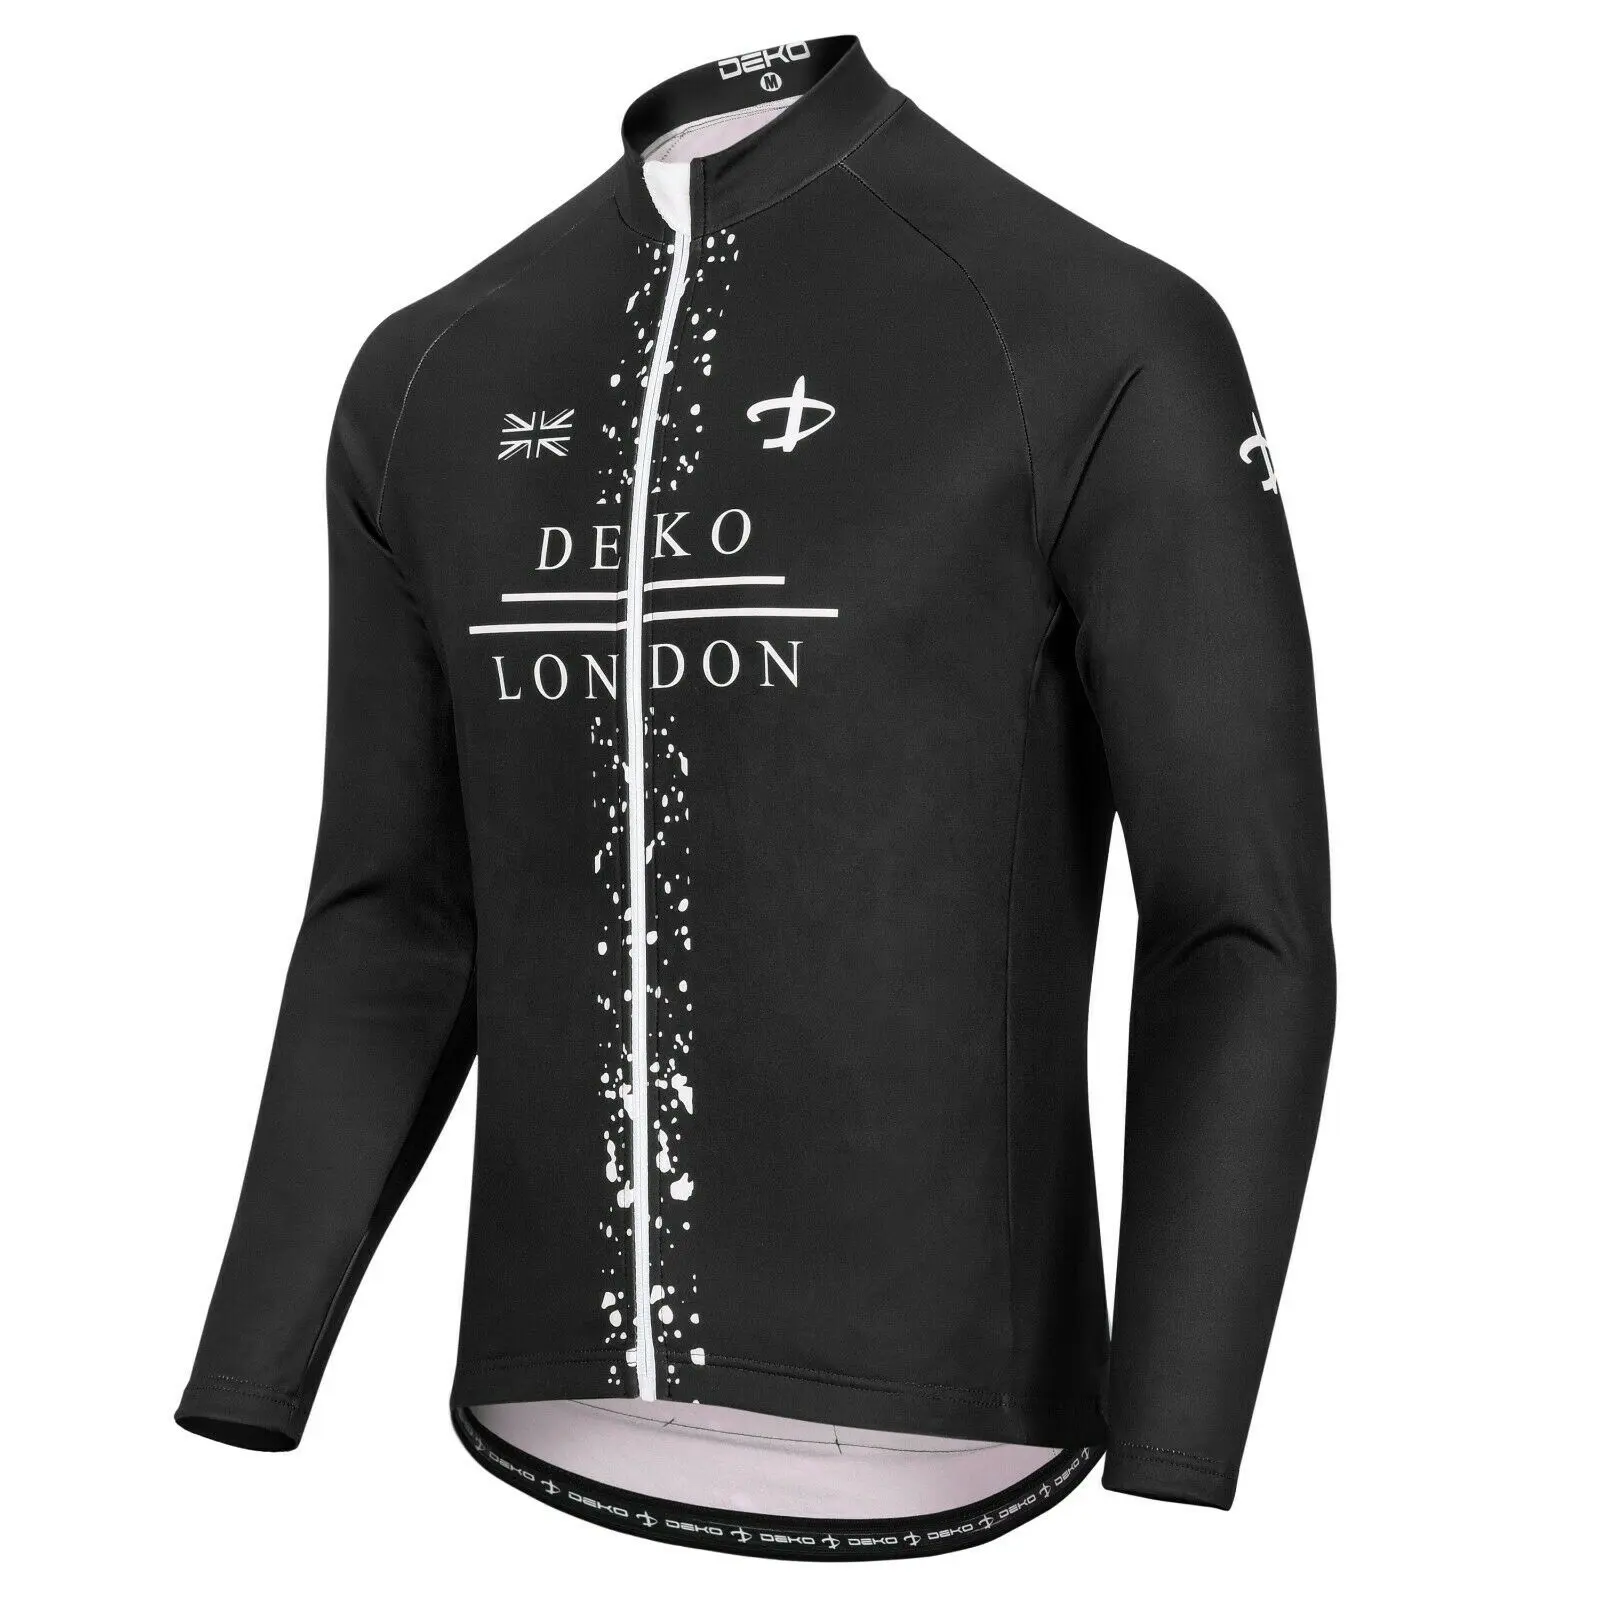 DEKO Langarm Stylish Warme Fahrrad bekleidung Pro Team Radfahren Jersey Herren Winter Rennrad Shirt Gute Qualität